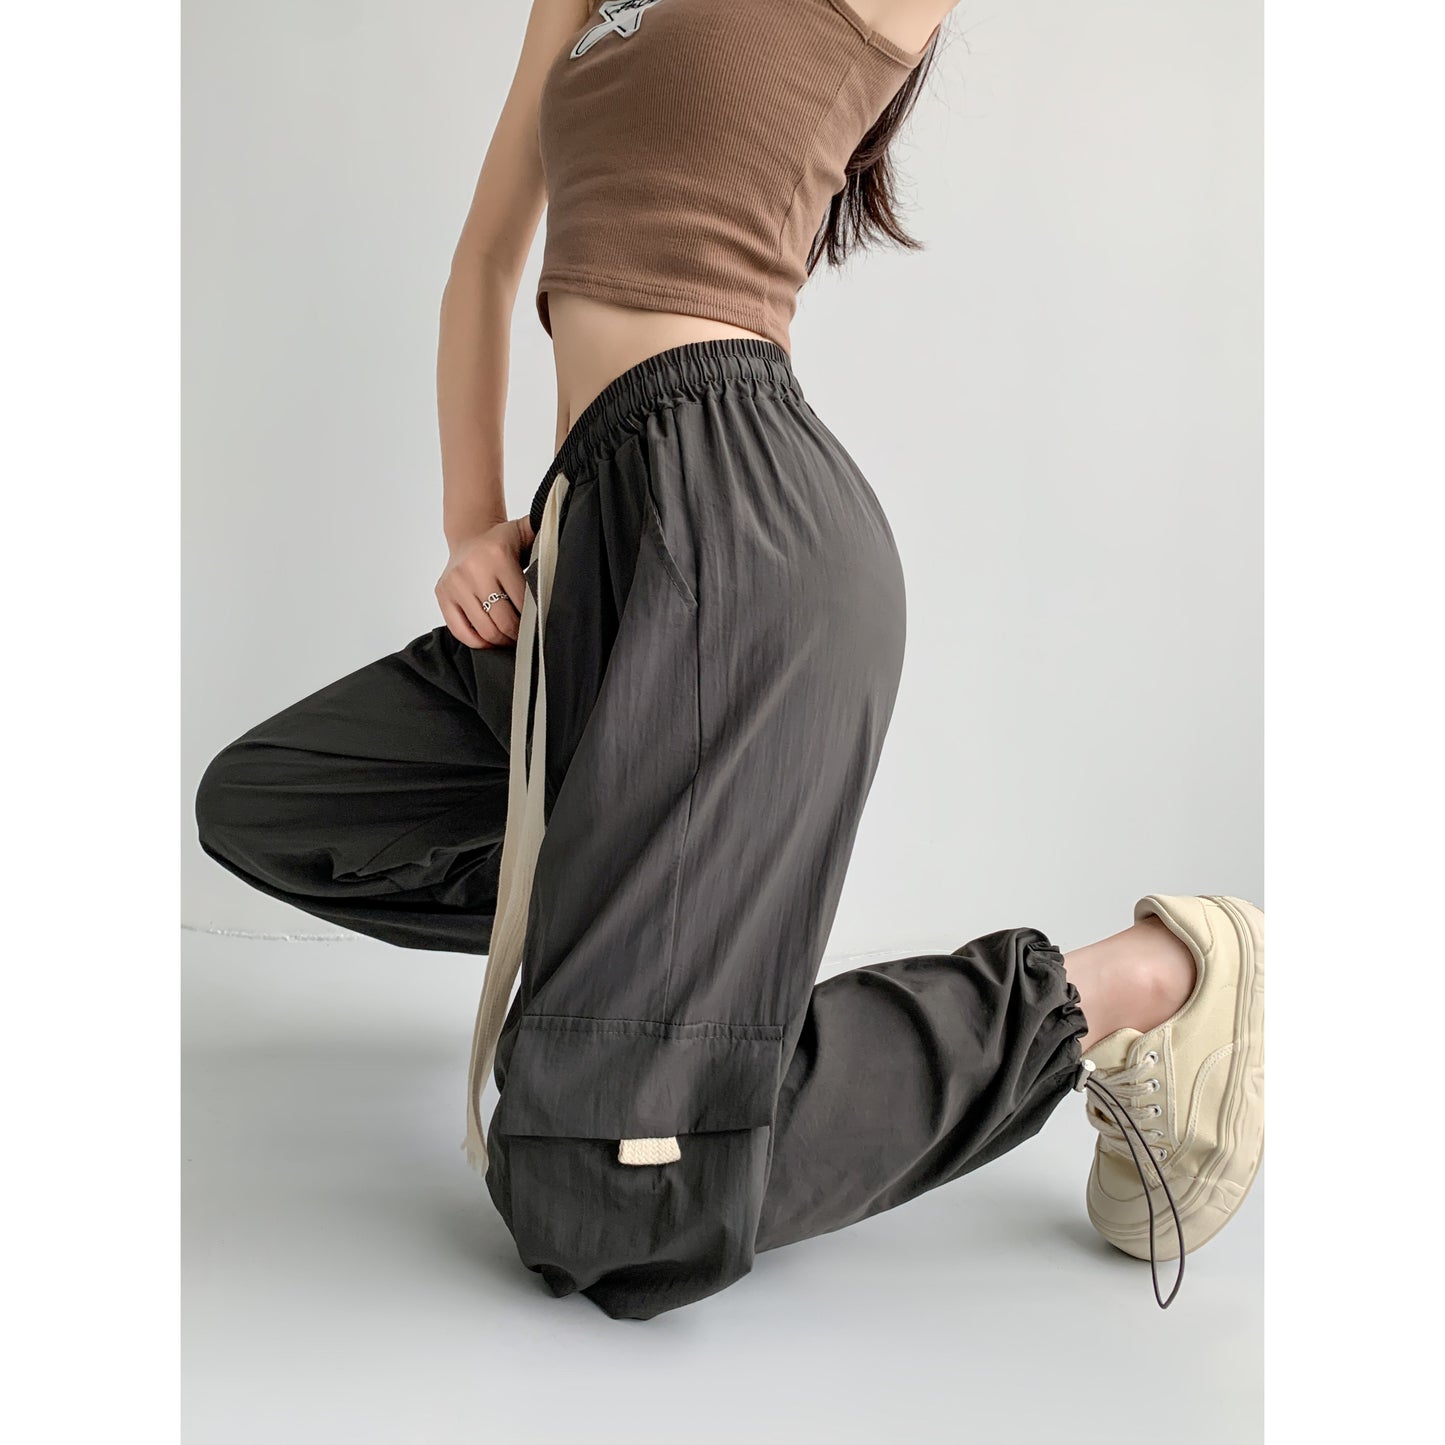 Pantalones cargo de pierna ancha con cintura alta, sueltos y casuales, de seda y secado rápido con múltiples bolsillos.